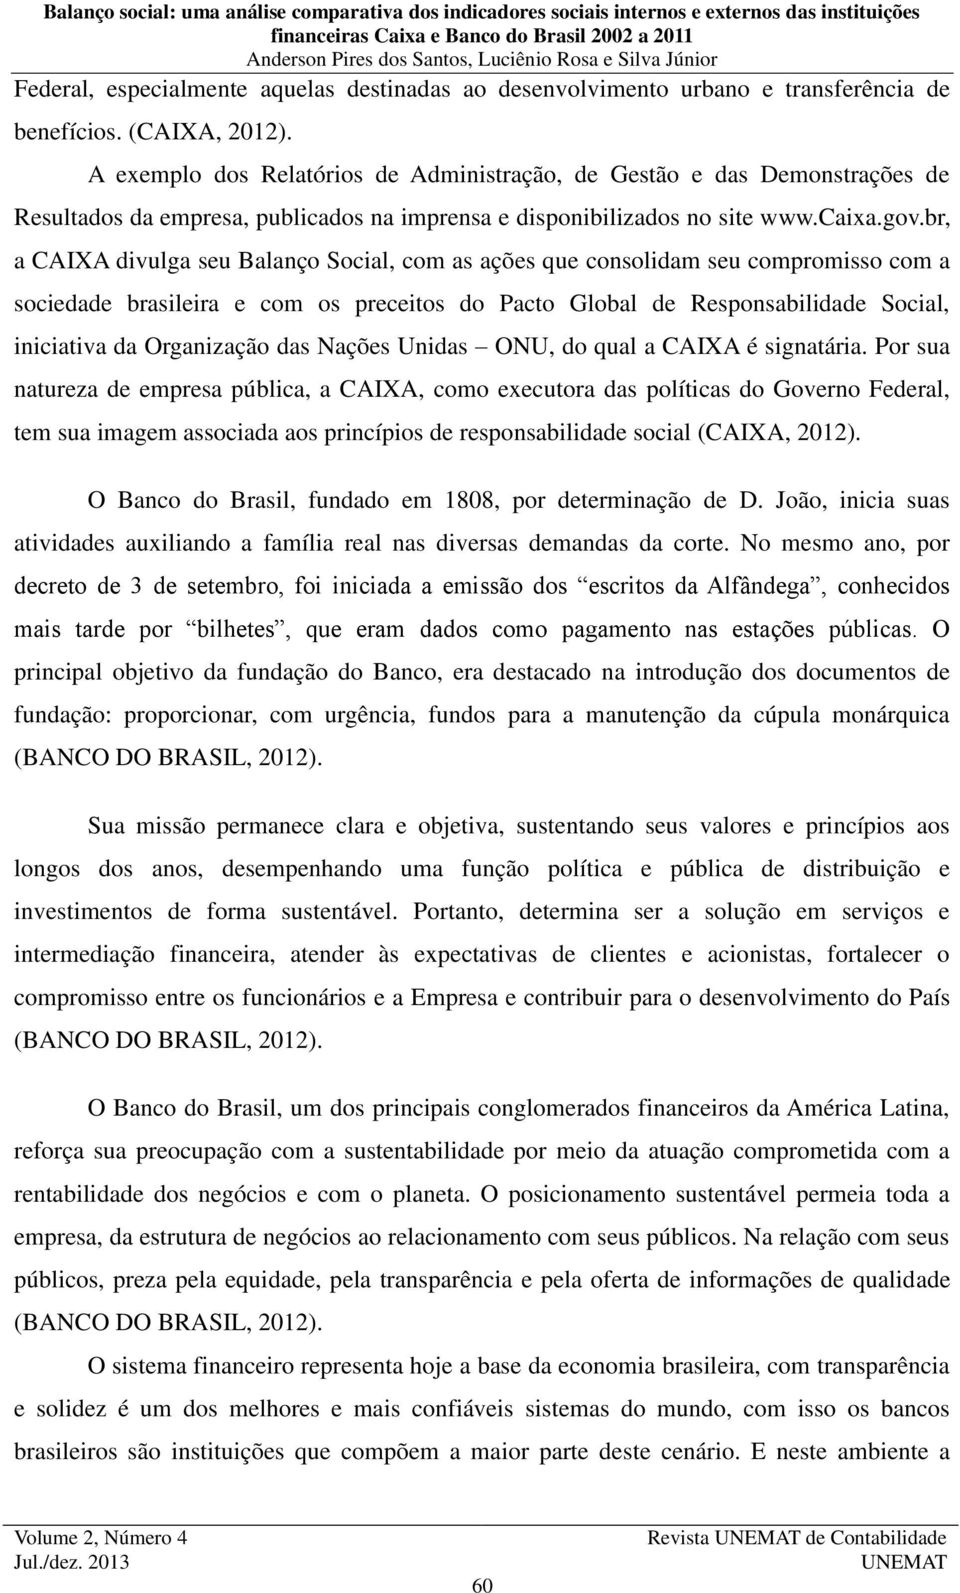 br, a CAIXA divulga seu Balanço Social, com as ações que consolidam seu compromisso com a sociedade brasileira e com os preceitos do Pacto Global de Responsabilidade Social, iniciativa da Organização